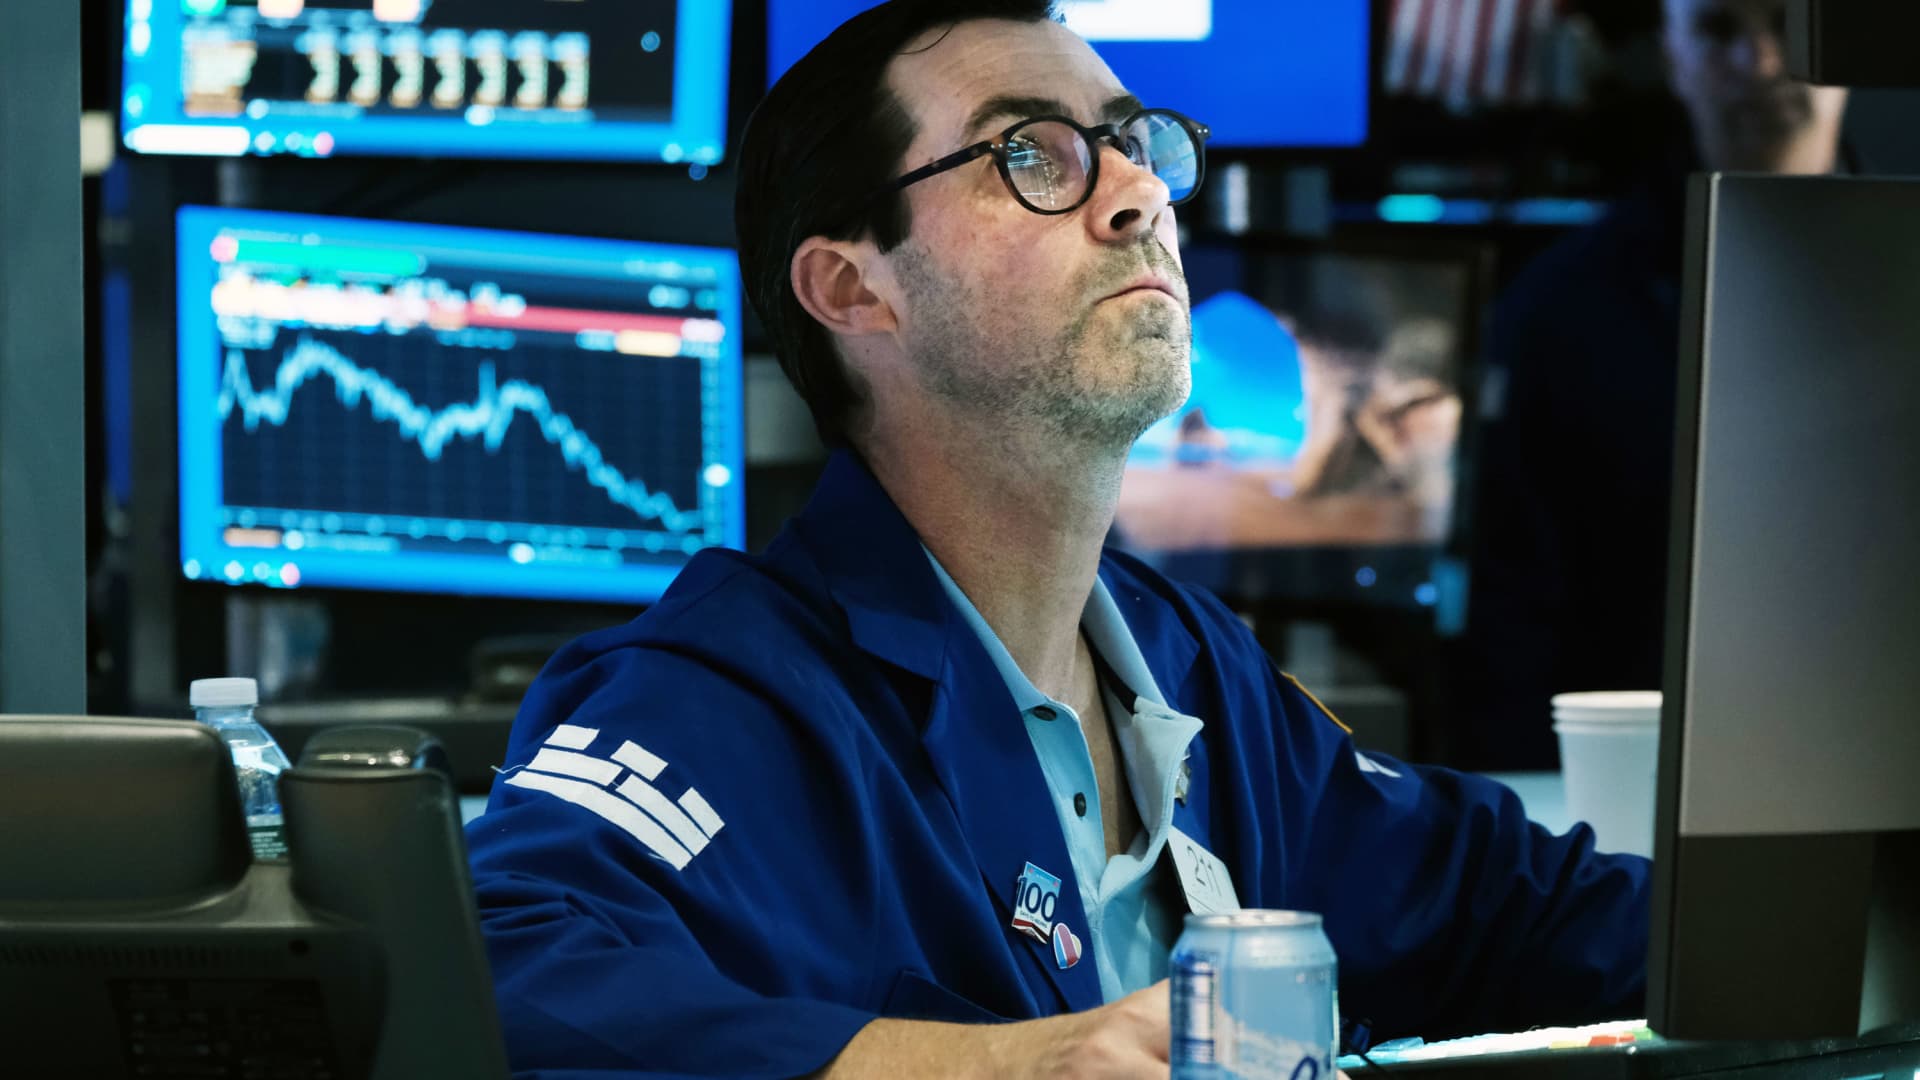 Le azioni scendono mentre Wall Street fatica a riprendere piede e il settore tecnologico rallenta